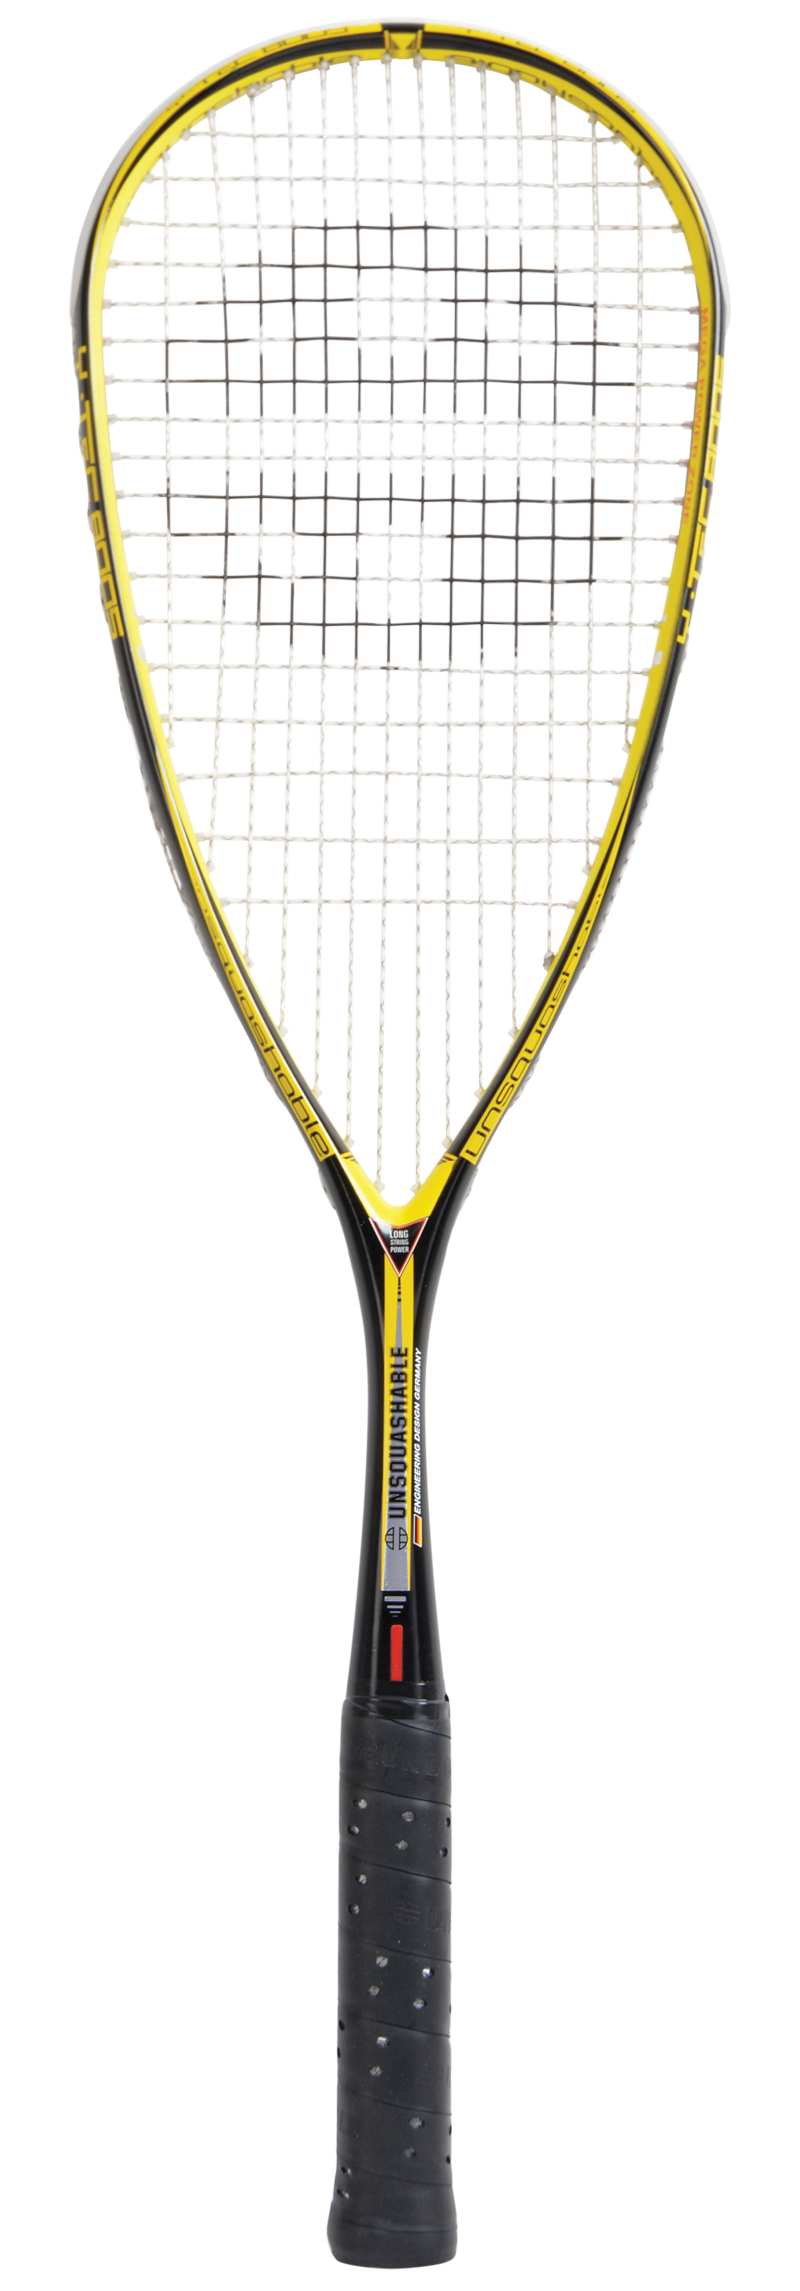 Unsquashable Y-Tec 8005 Squash Racket